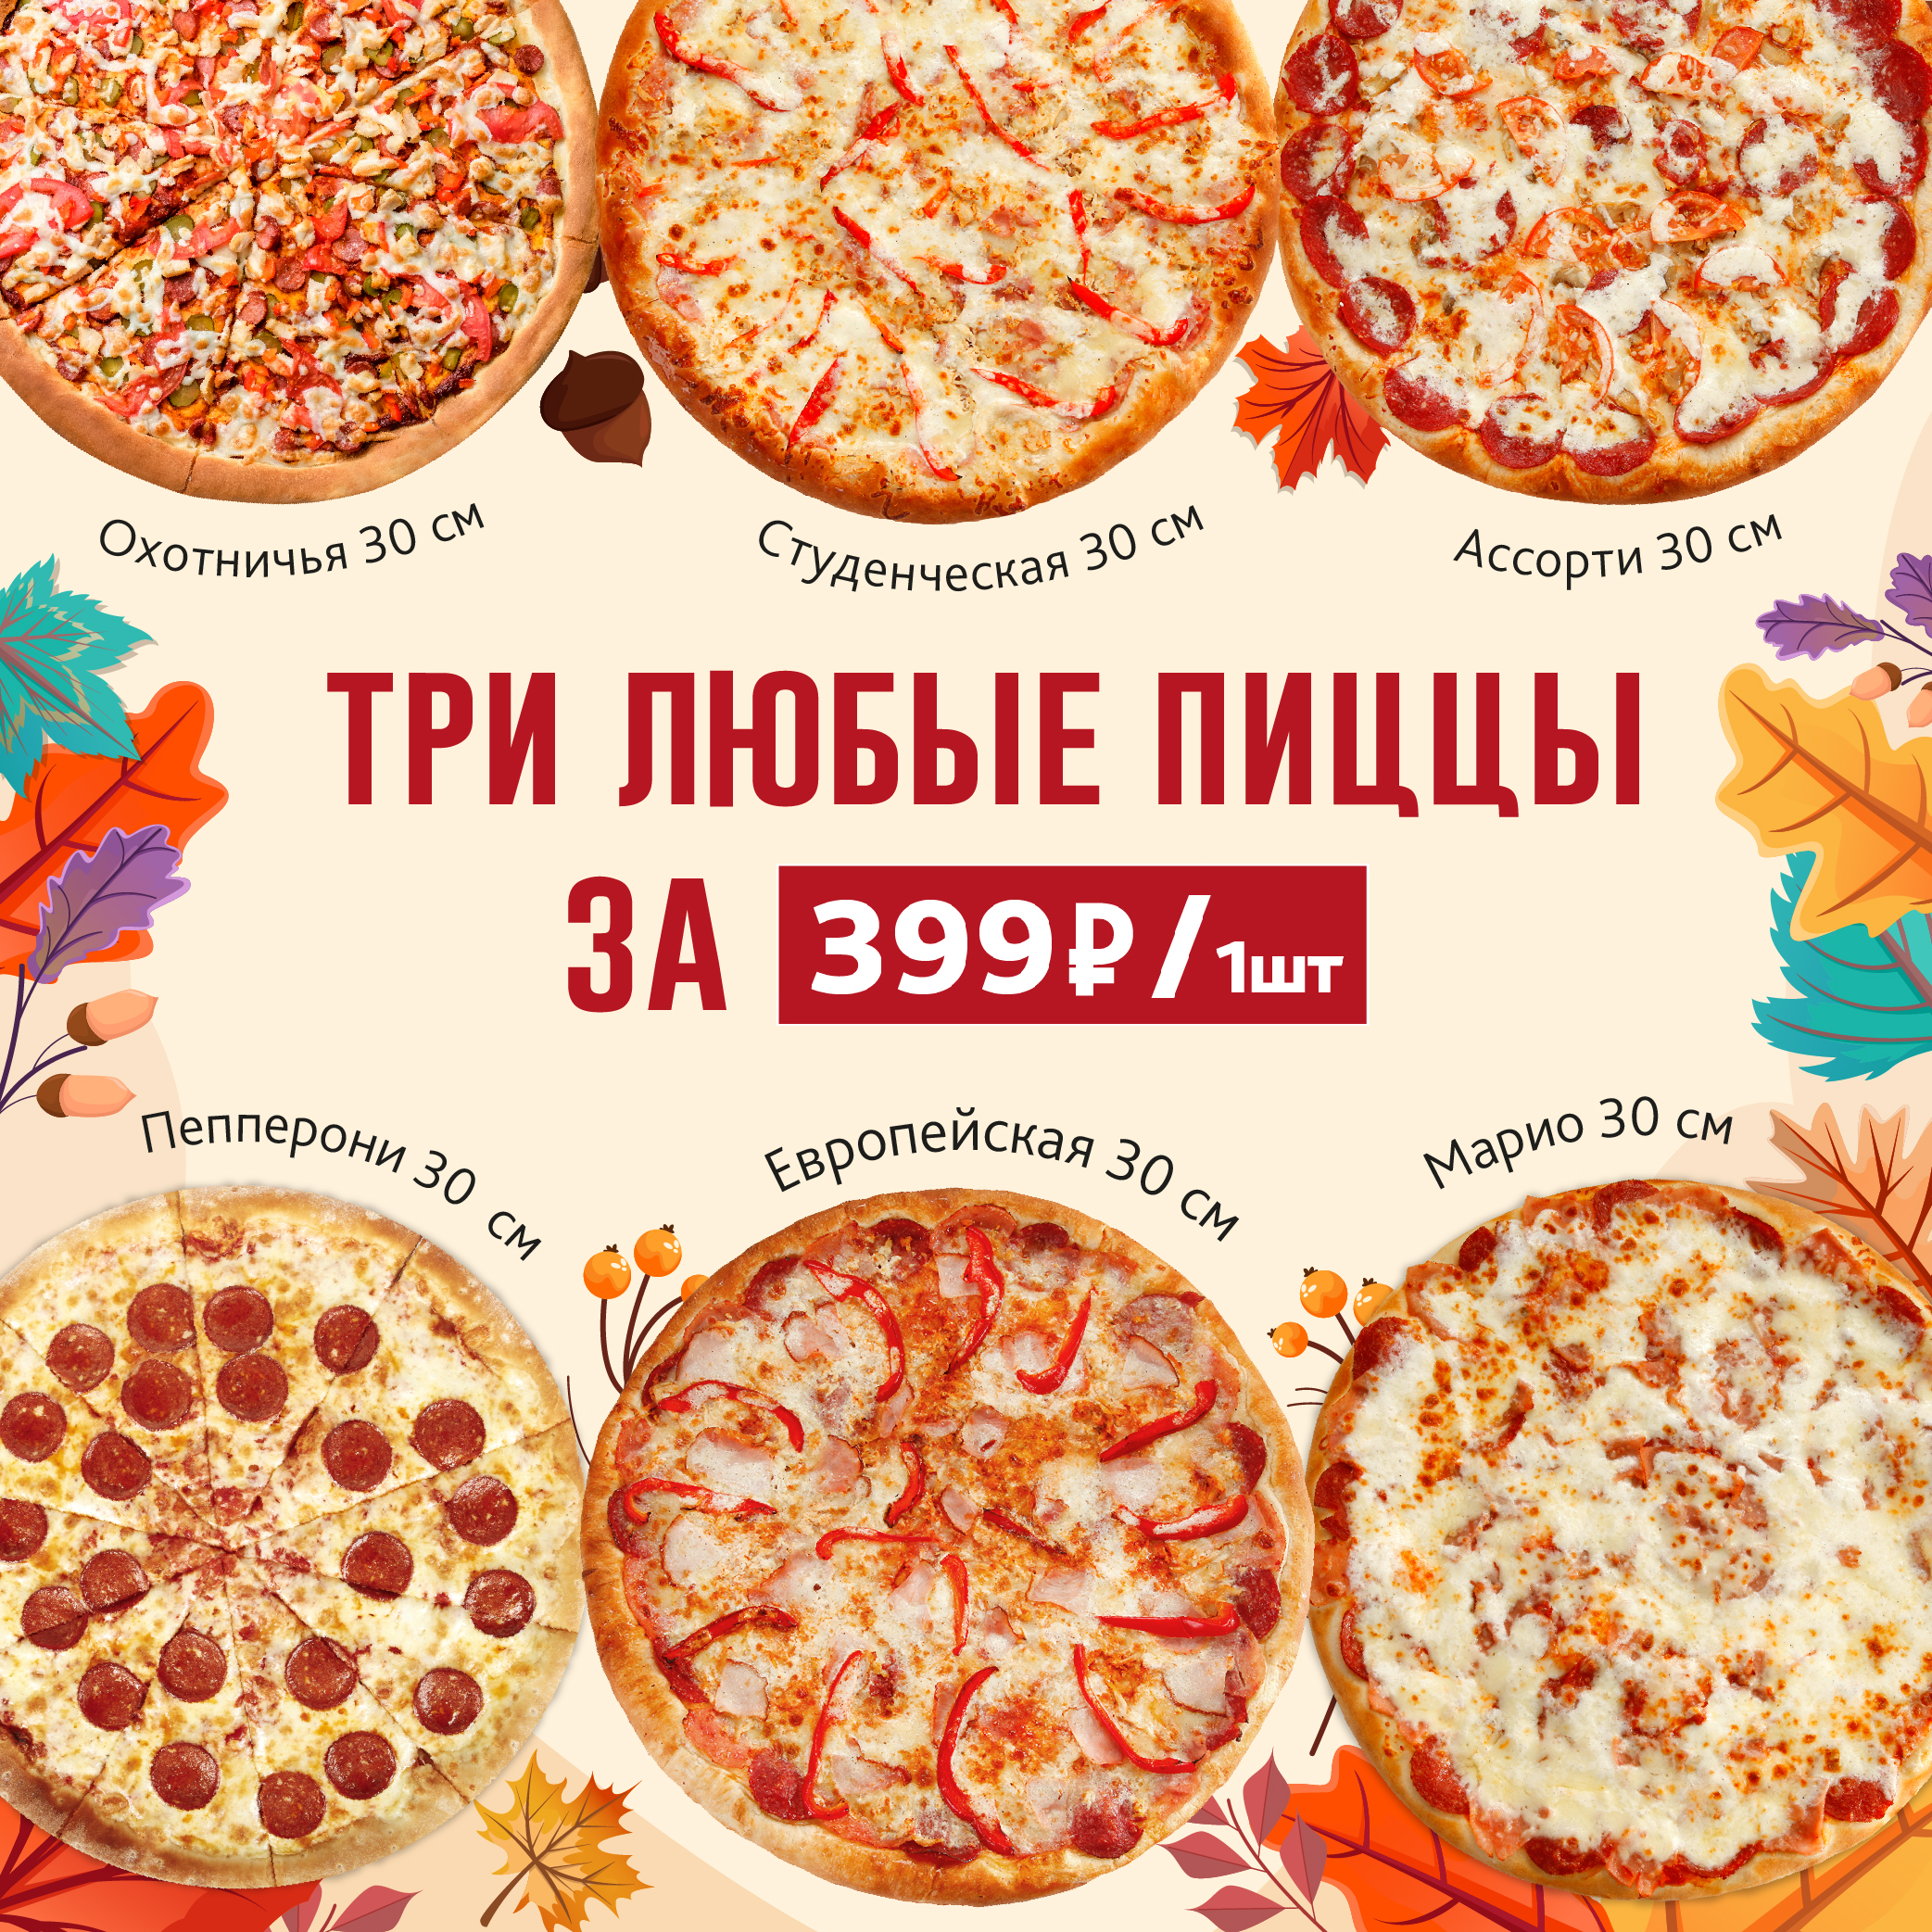 цены на пиццу в ассортименте фото 115